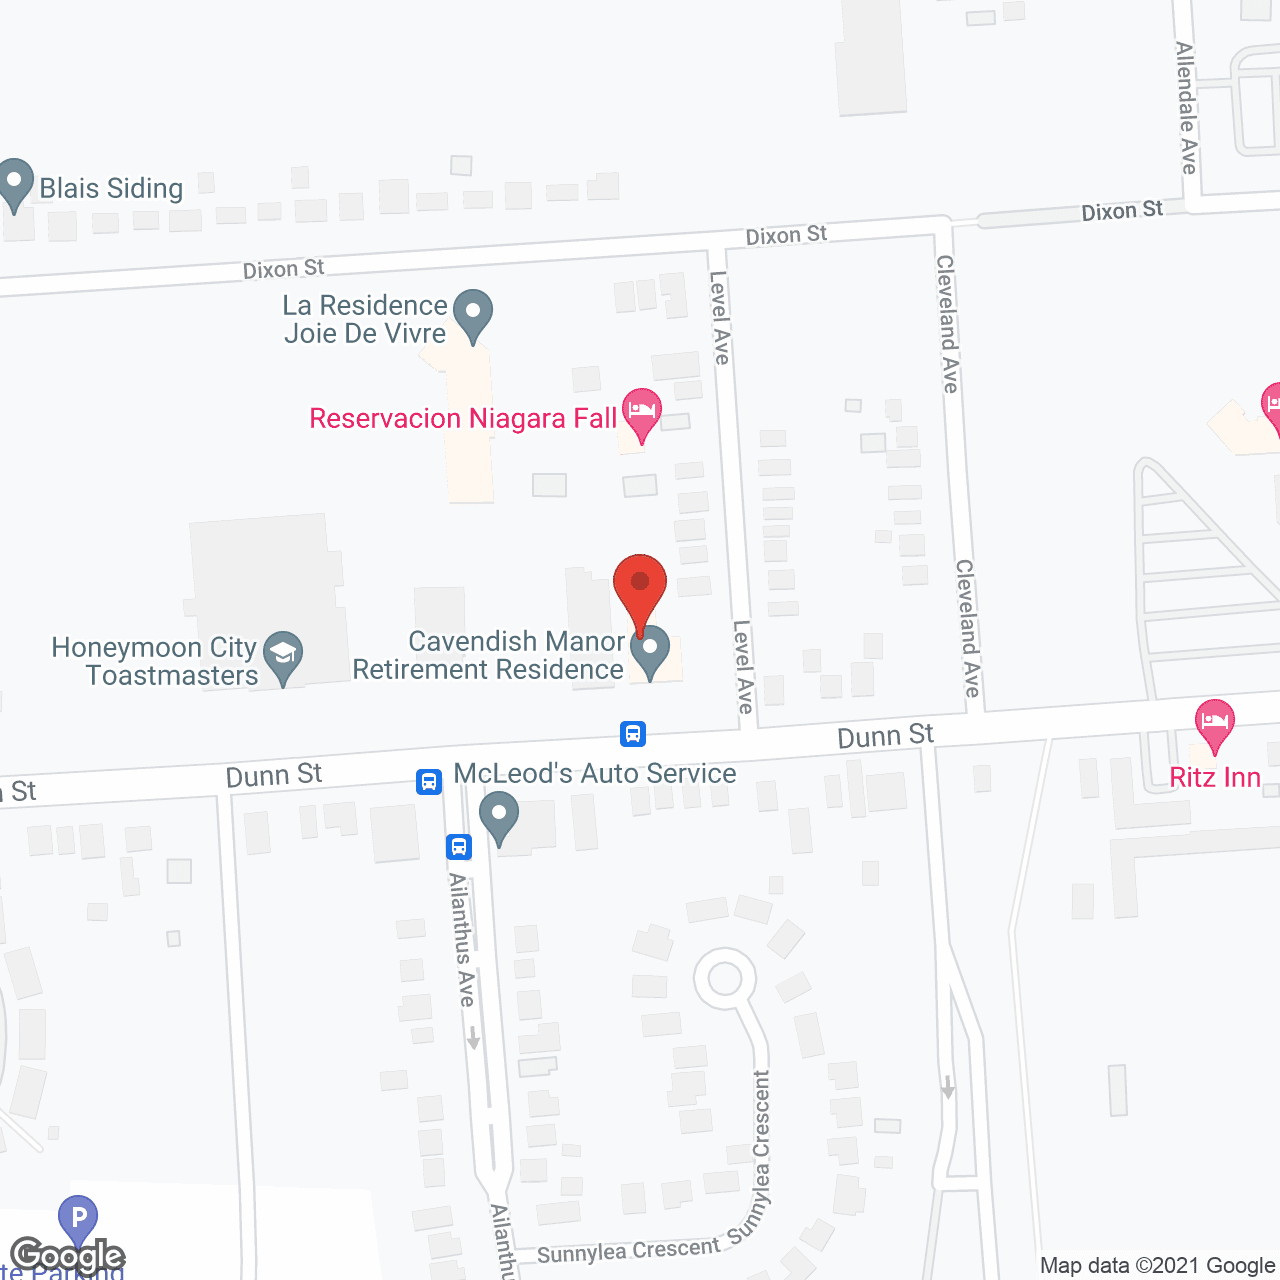 Cavendish Manor in google map